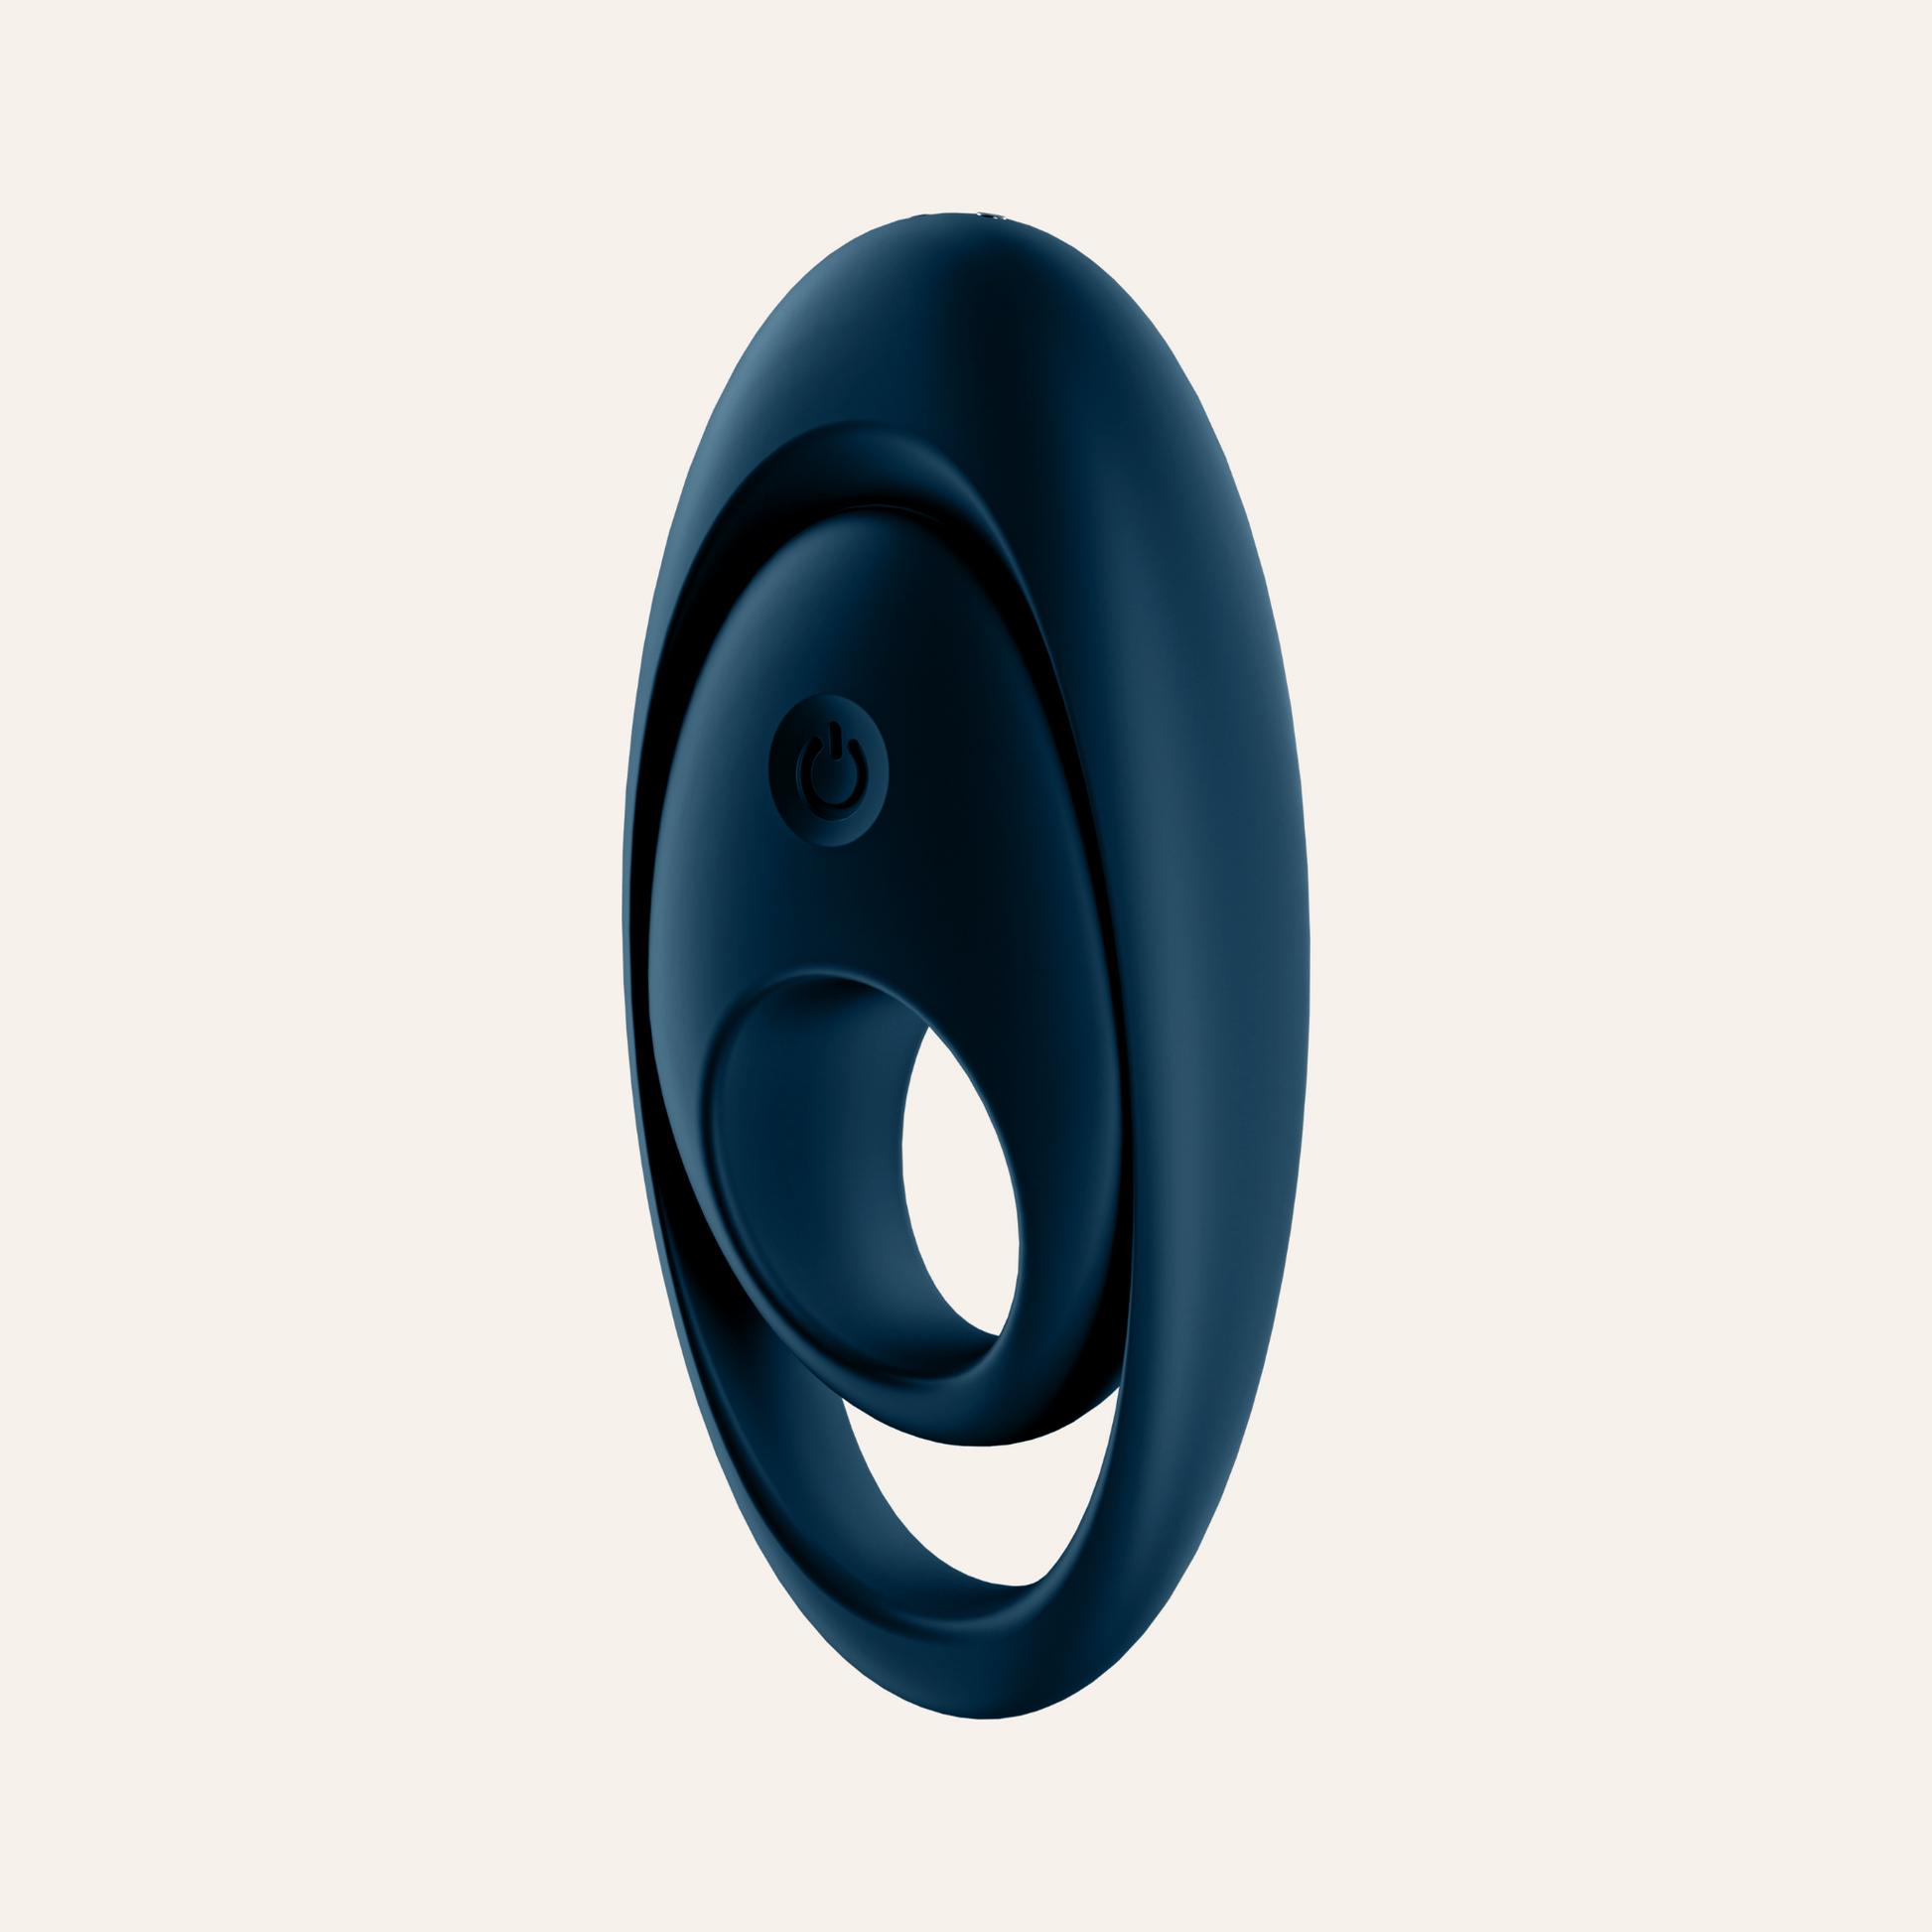 Vibromasseur en anneau 'Glorious Duo' de Satisfyer, conçu pour le plaisir partagé avec 15 modes de vibration, emballé dans une boîte attrayante aux couleurs vives indiquant la qualité et la satisfaction garantie.